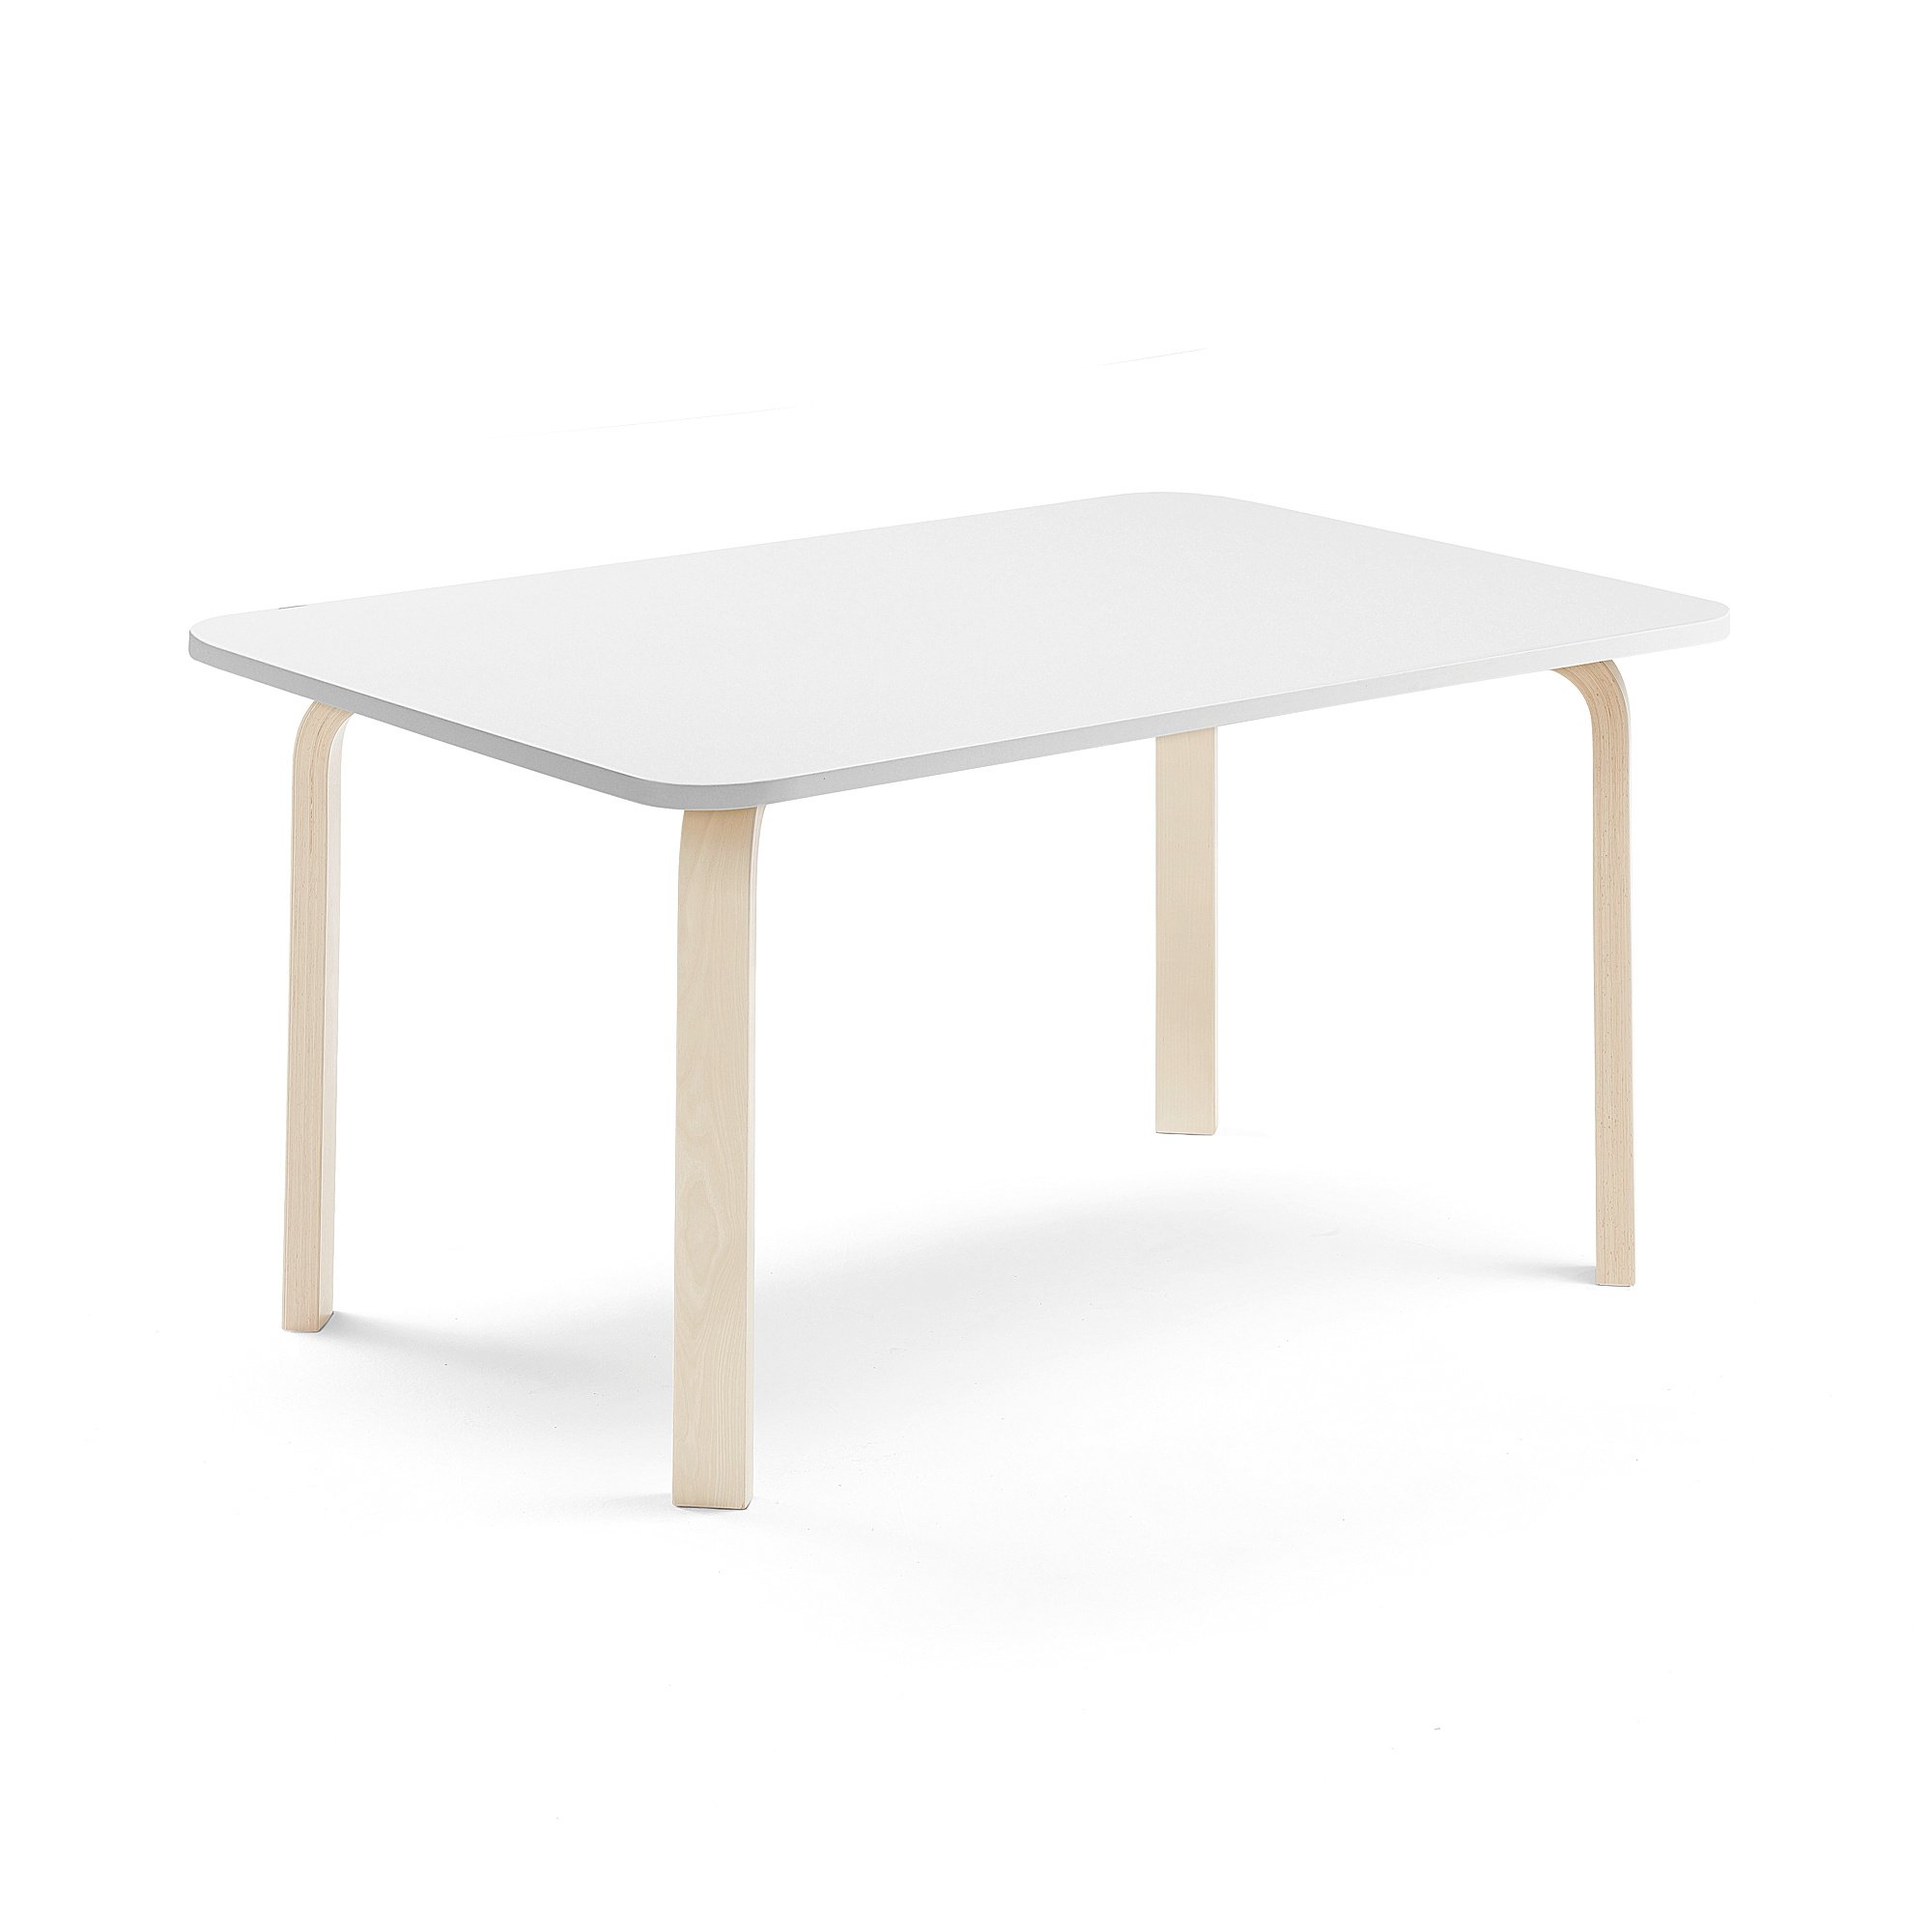 Stůl ELTON, 1200x700x590 mm, bříza, akustická HPL deska, bílá